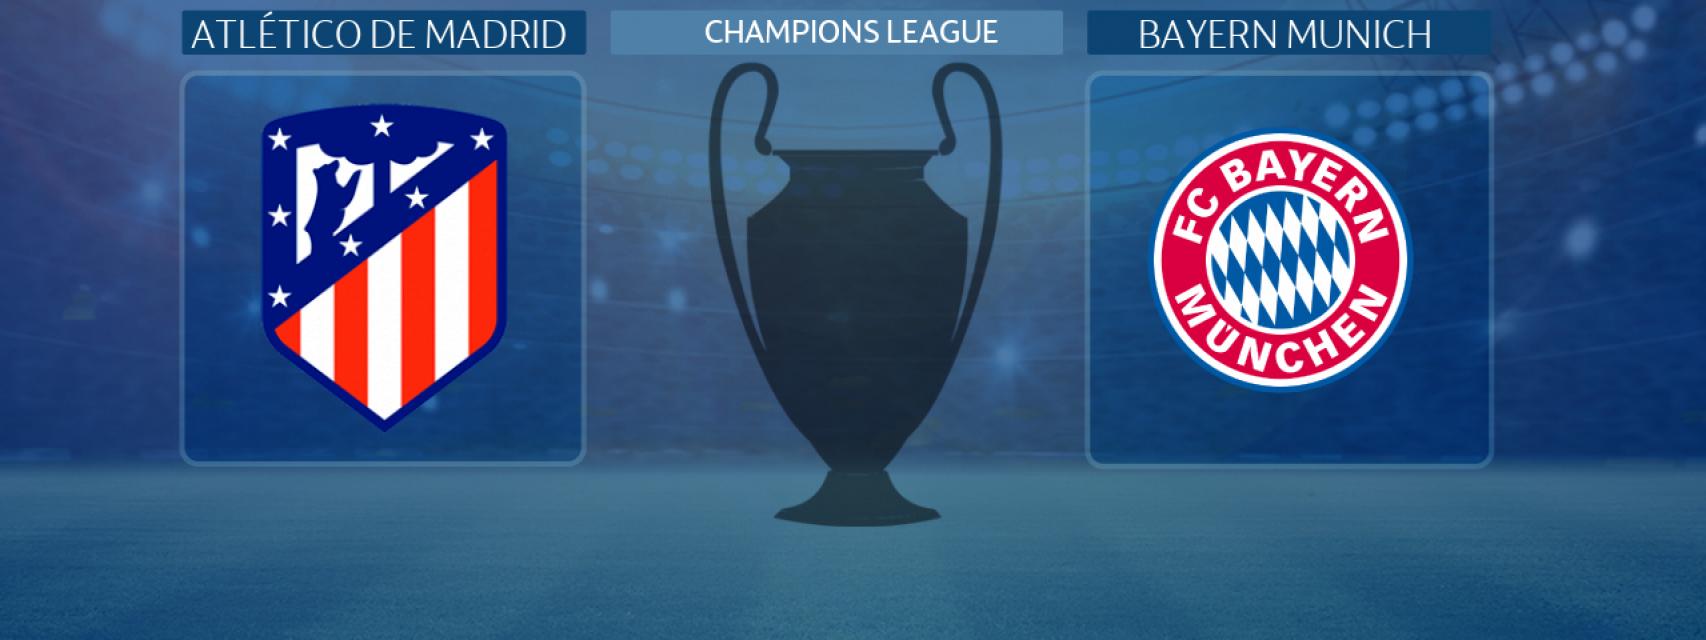 Atlético de Madrid - Bayern Munich, partido de la Champions League